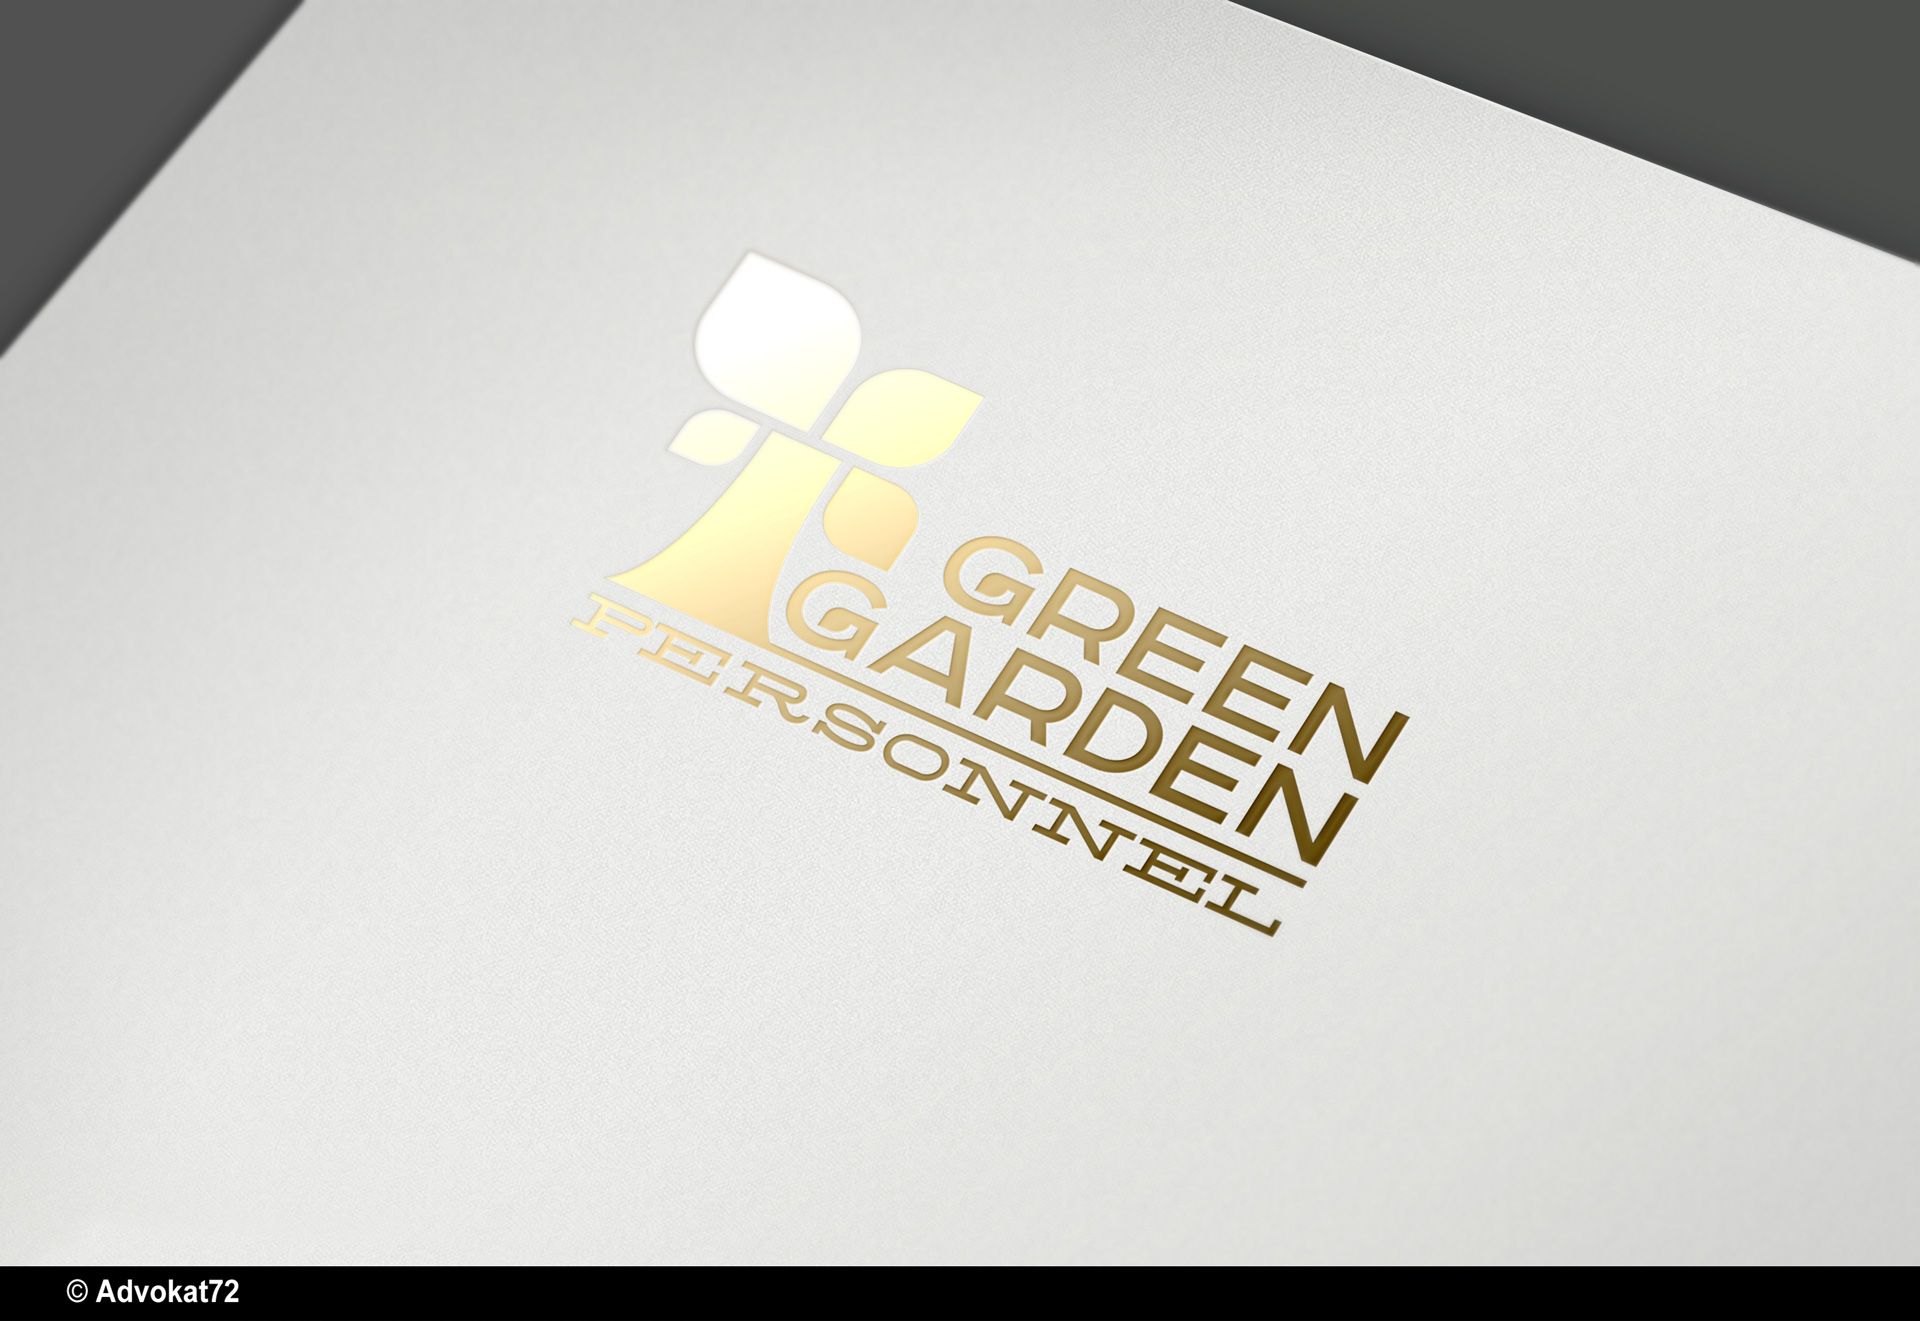  Фирм. стиль для Green Garden Personnel - дизайнер Advokat72